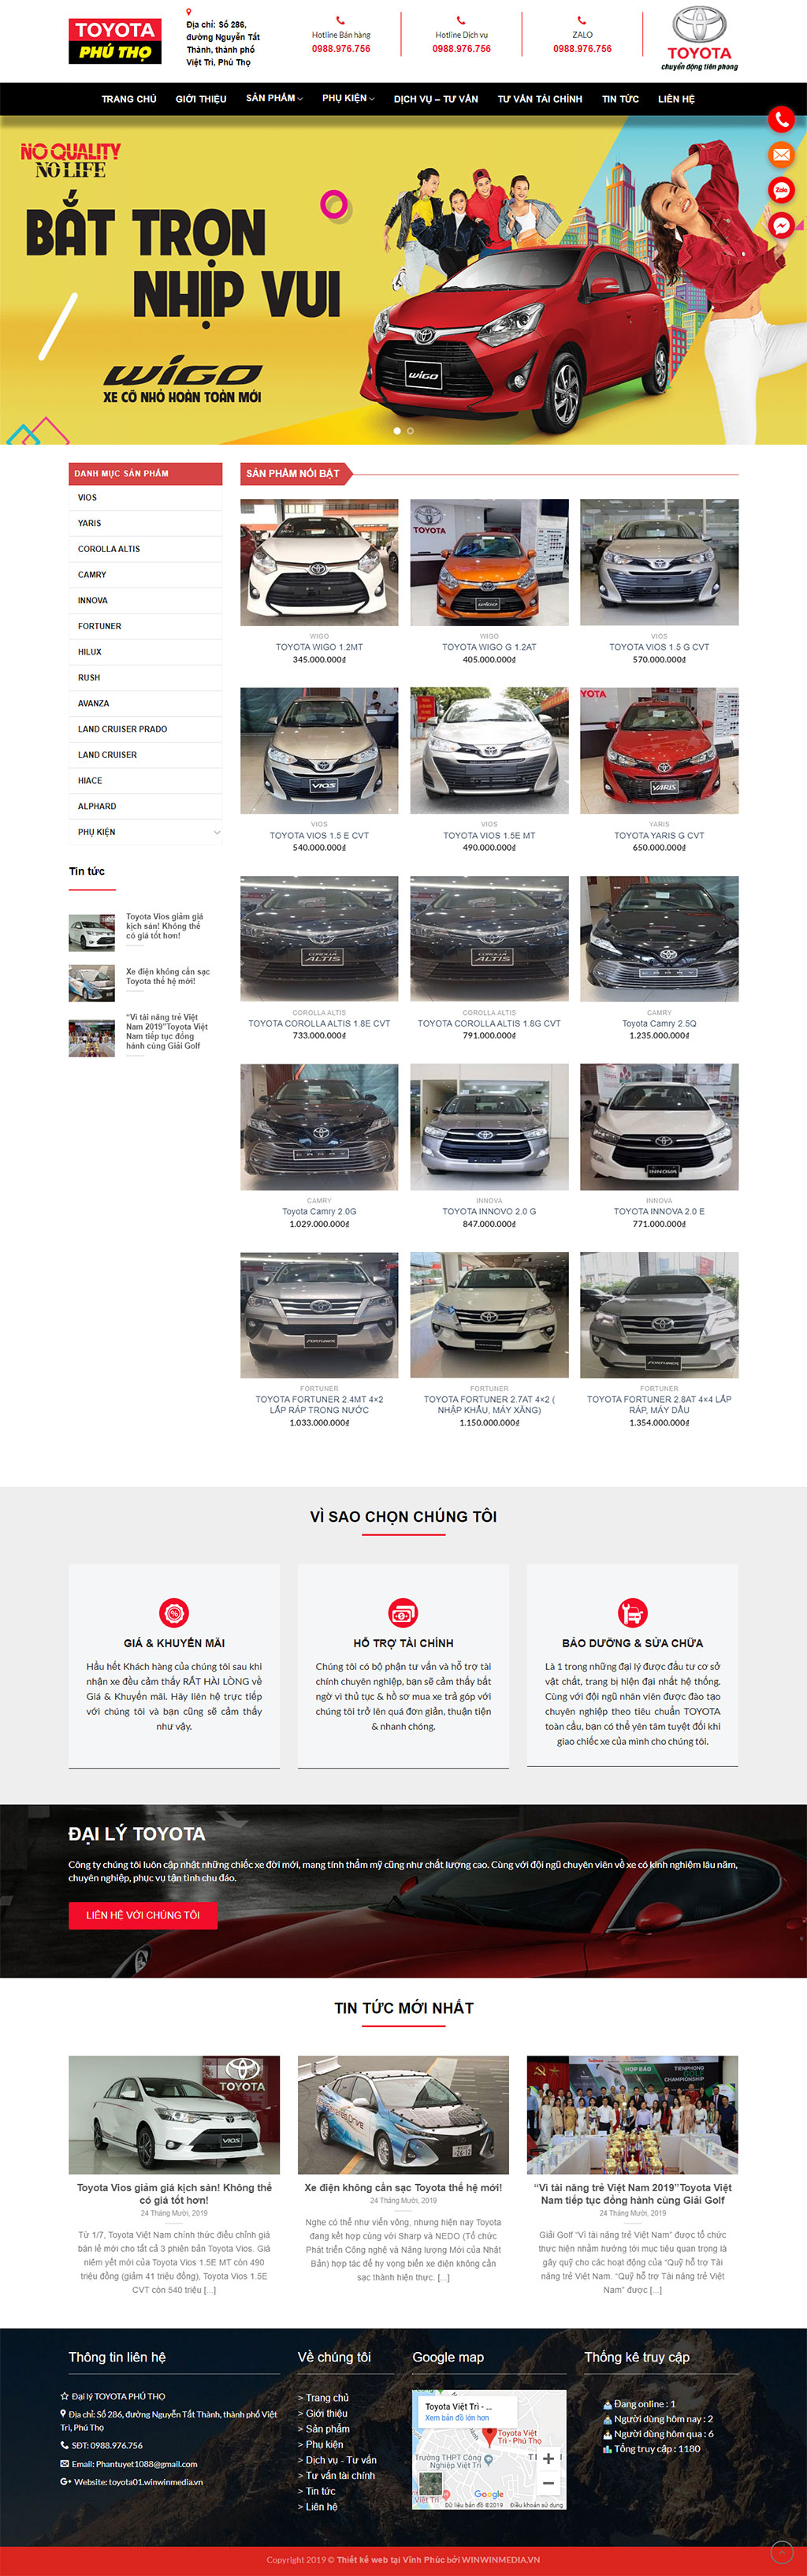 Mẫu thiết kế web bán ô tô Toyota Phú Thọ